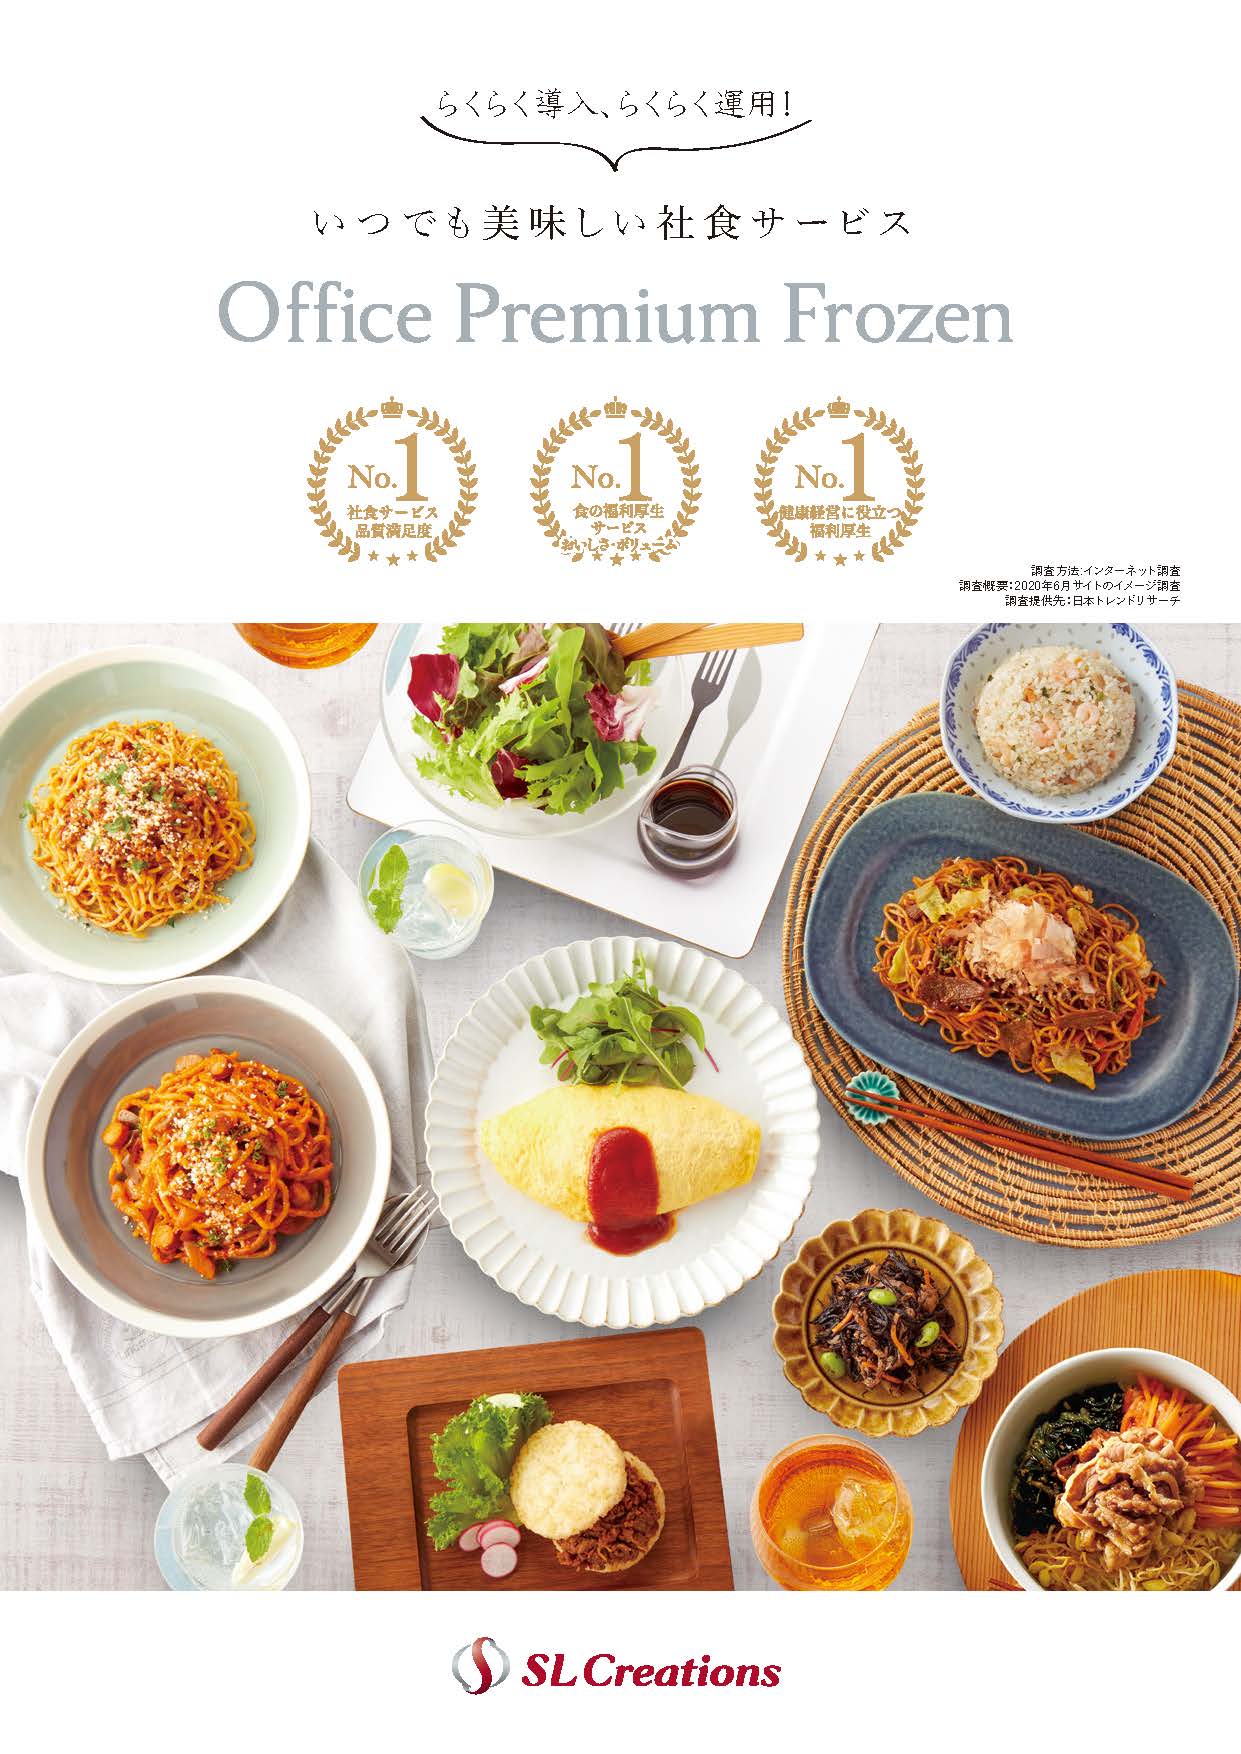 Office Premium Frozen導入ガイド